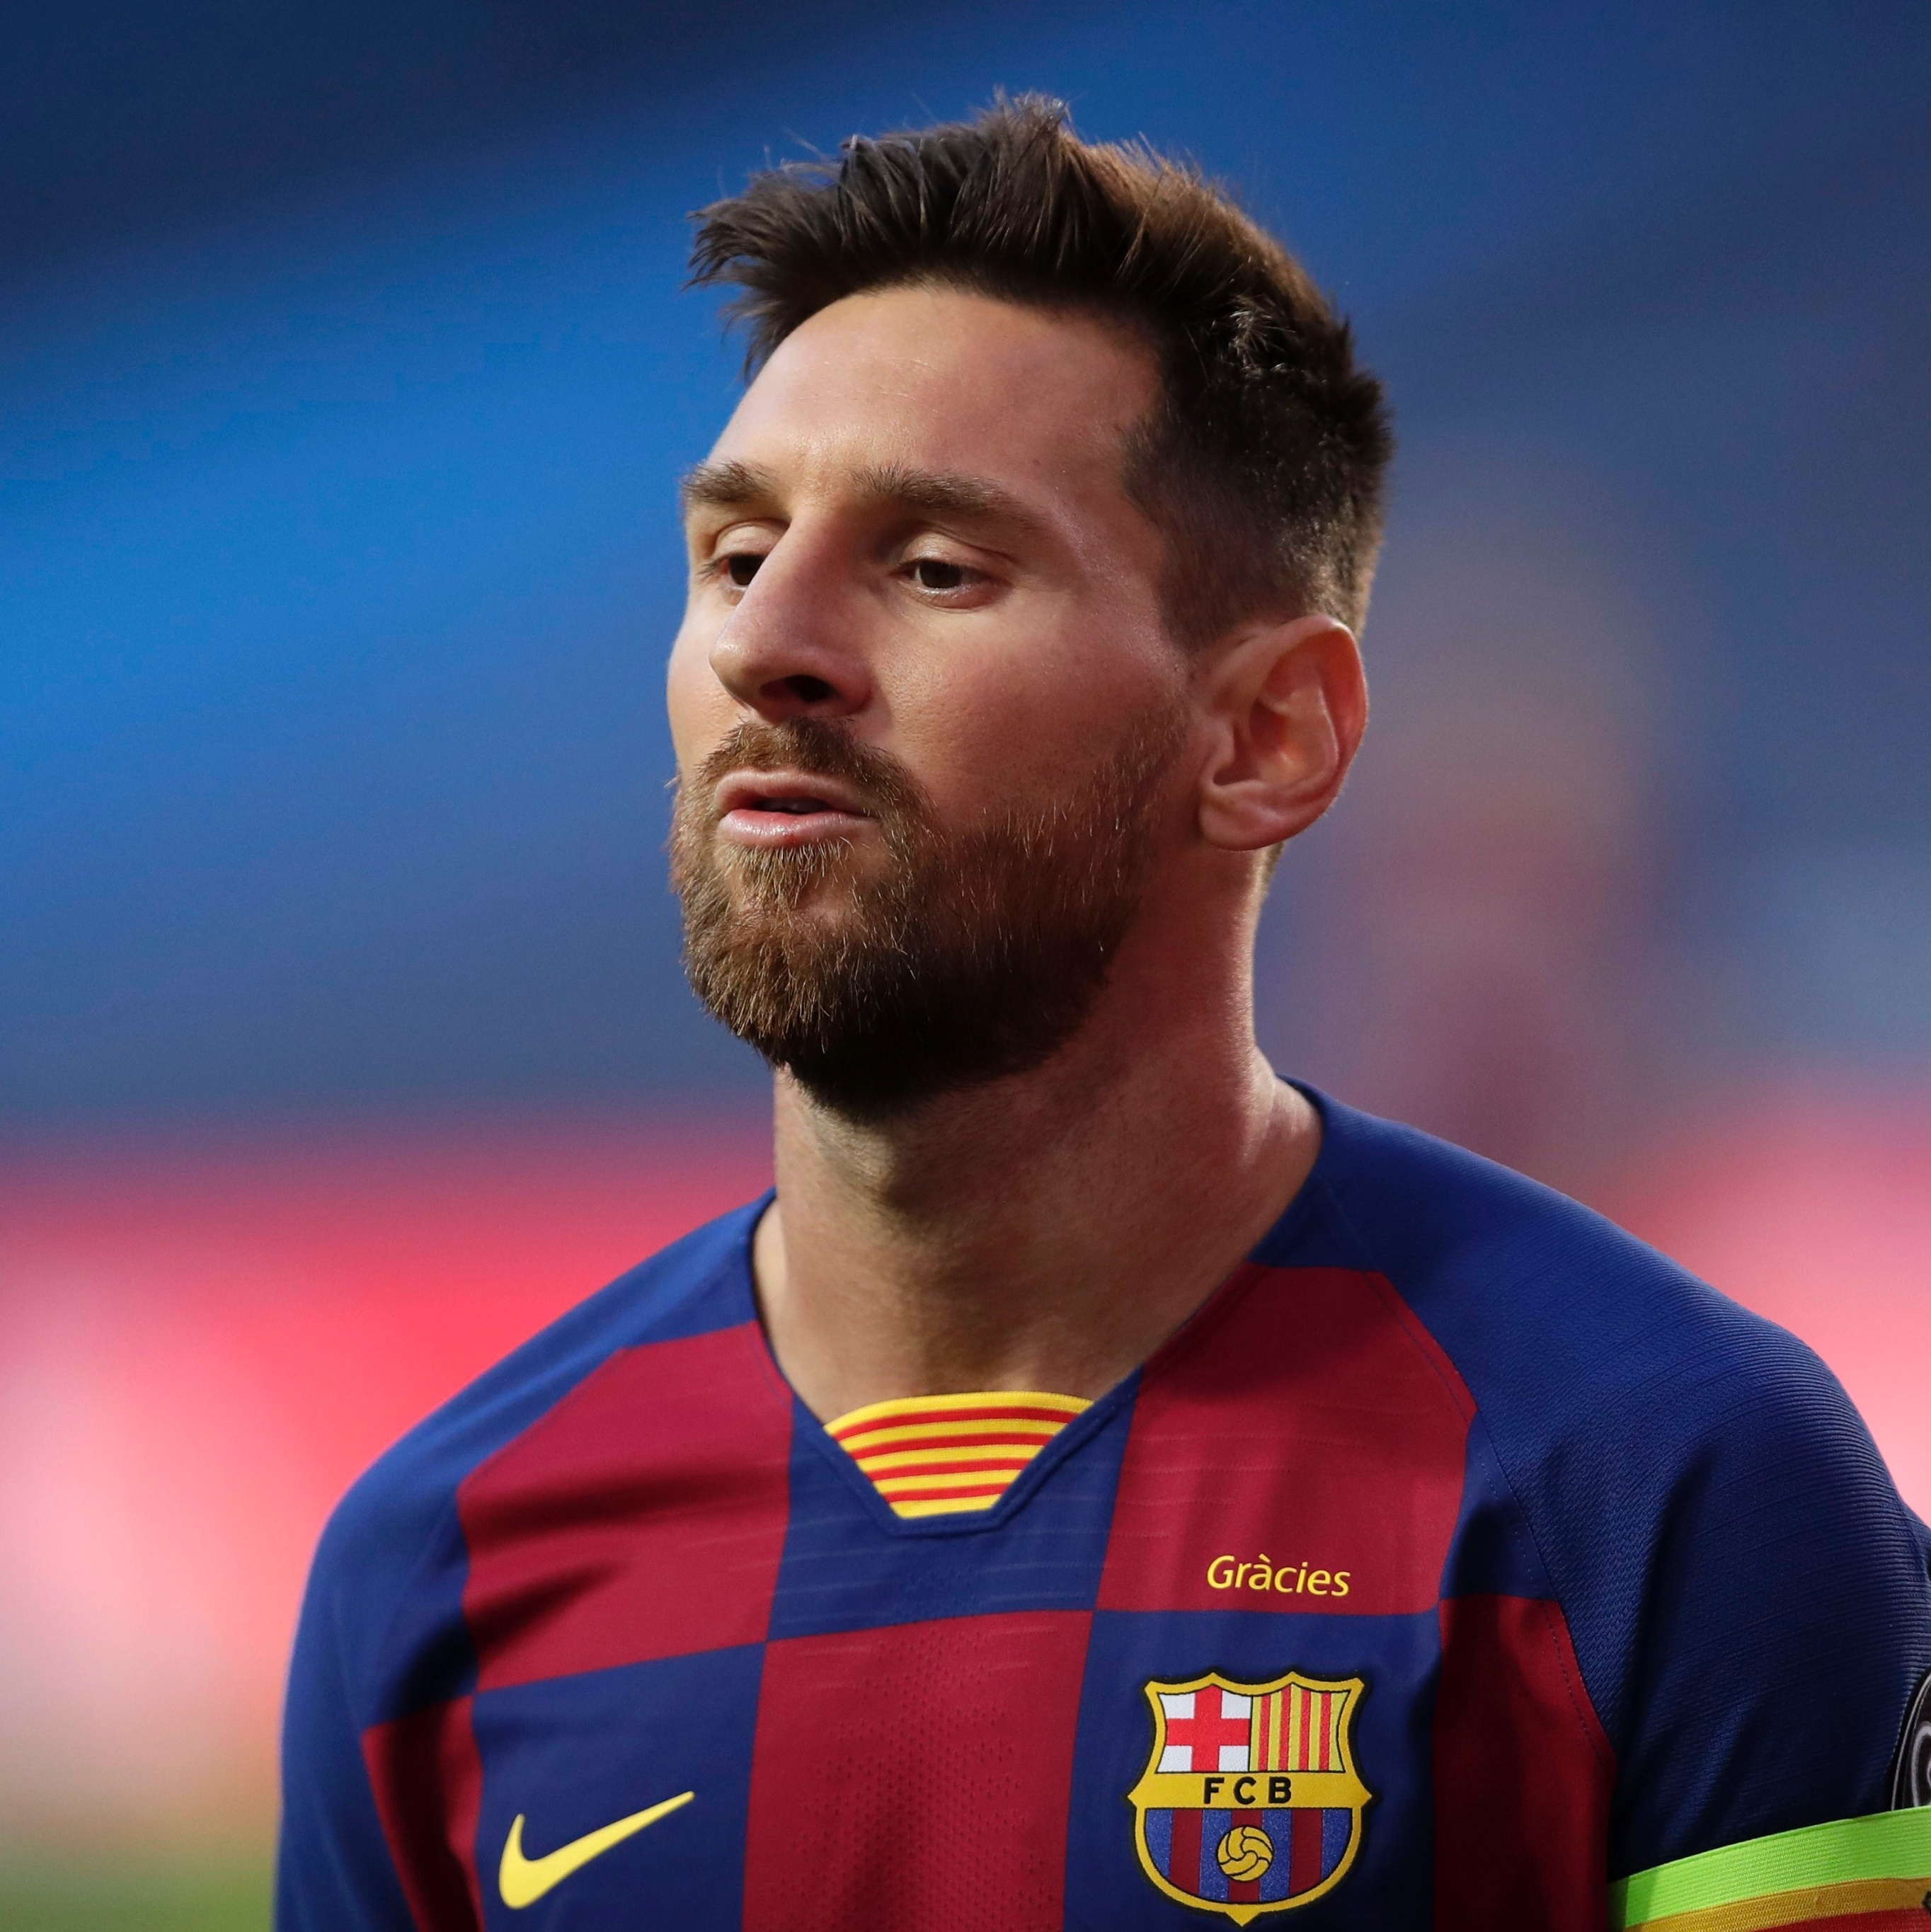 E do outro lado havia um jogador chamado Lionel Messi